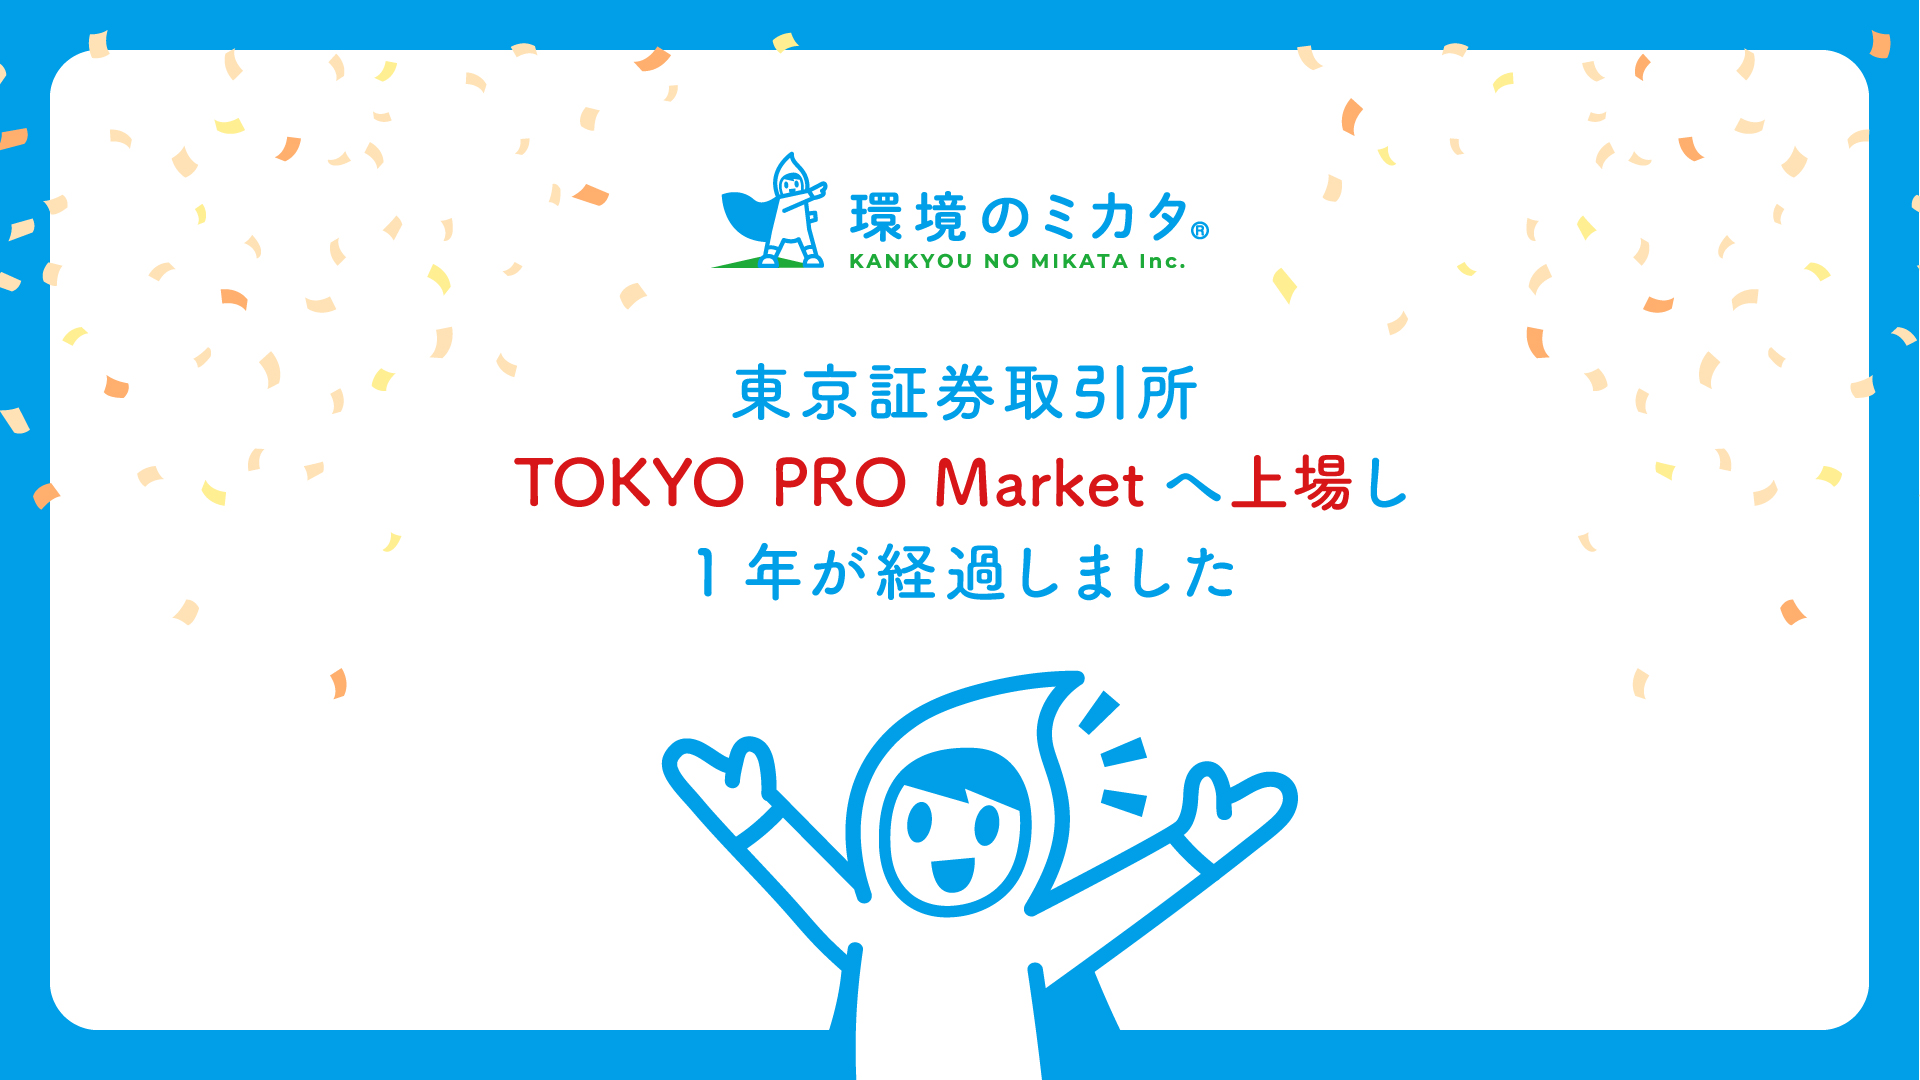 東京証券取引所 TOKYO PRO Market への株式上場から1年が経過しました